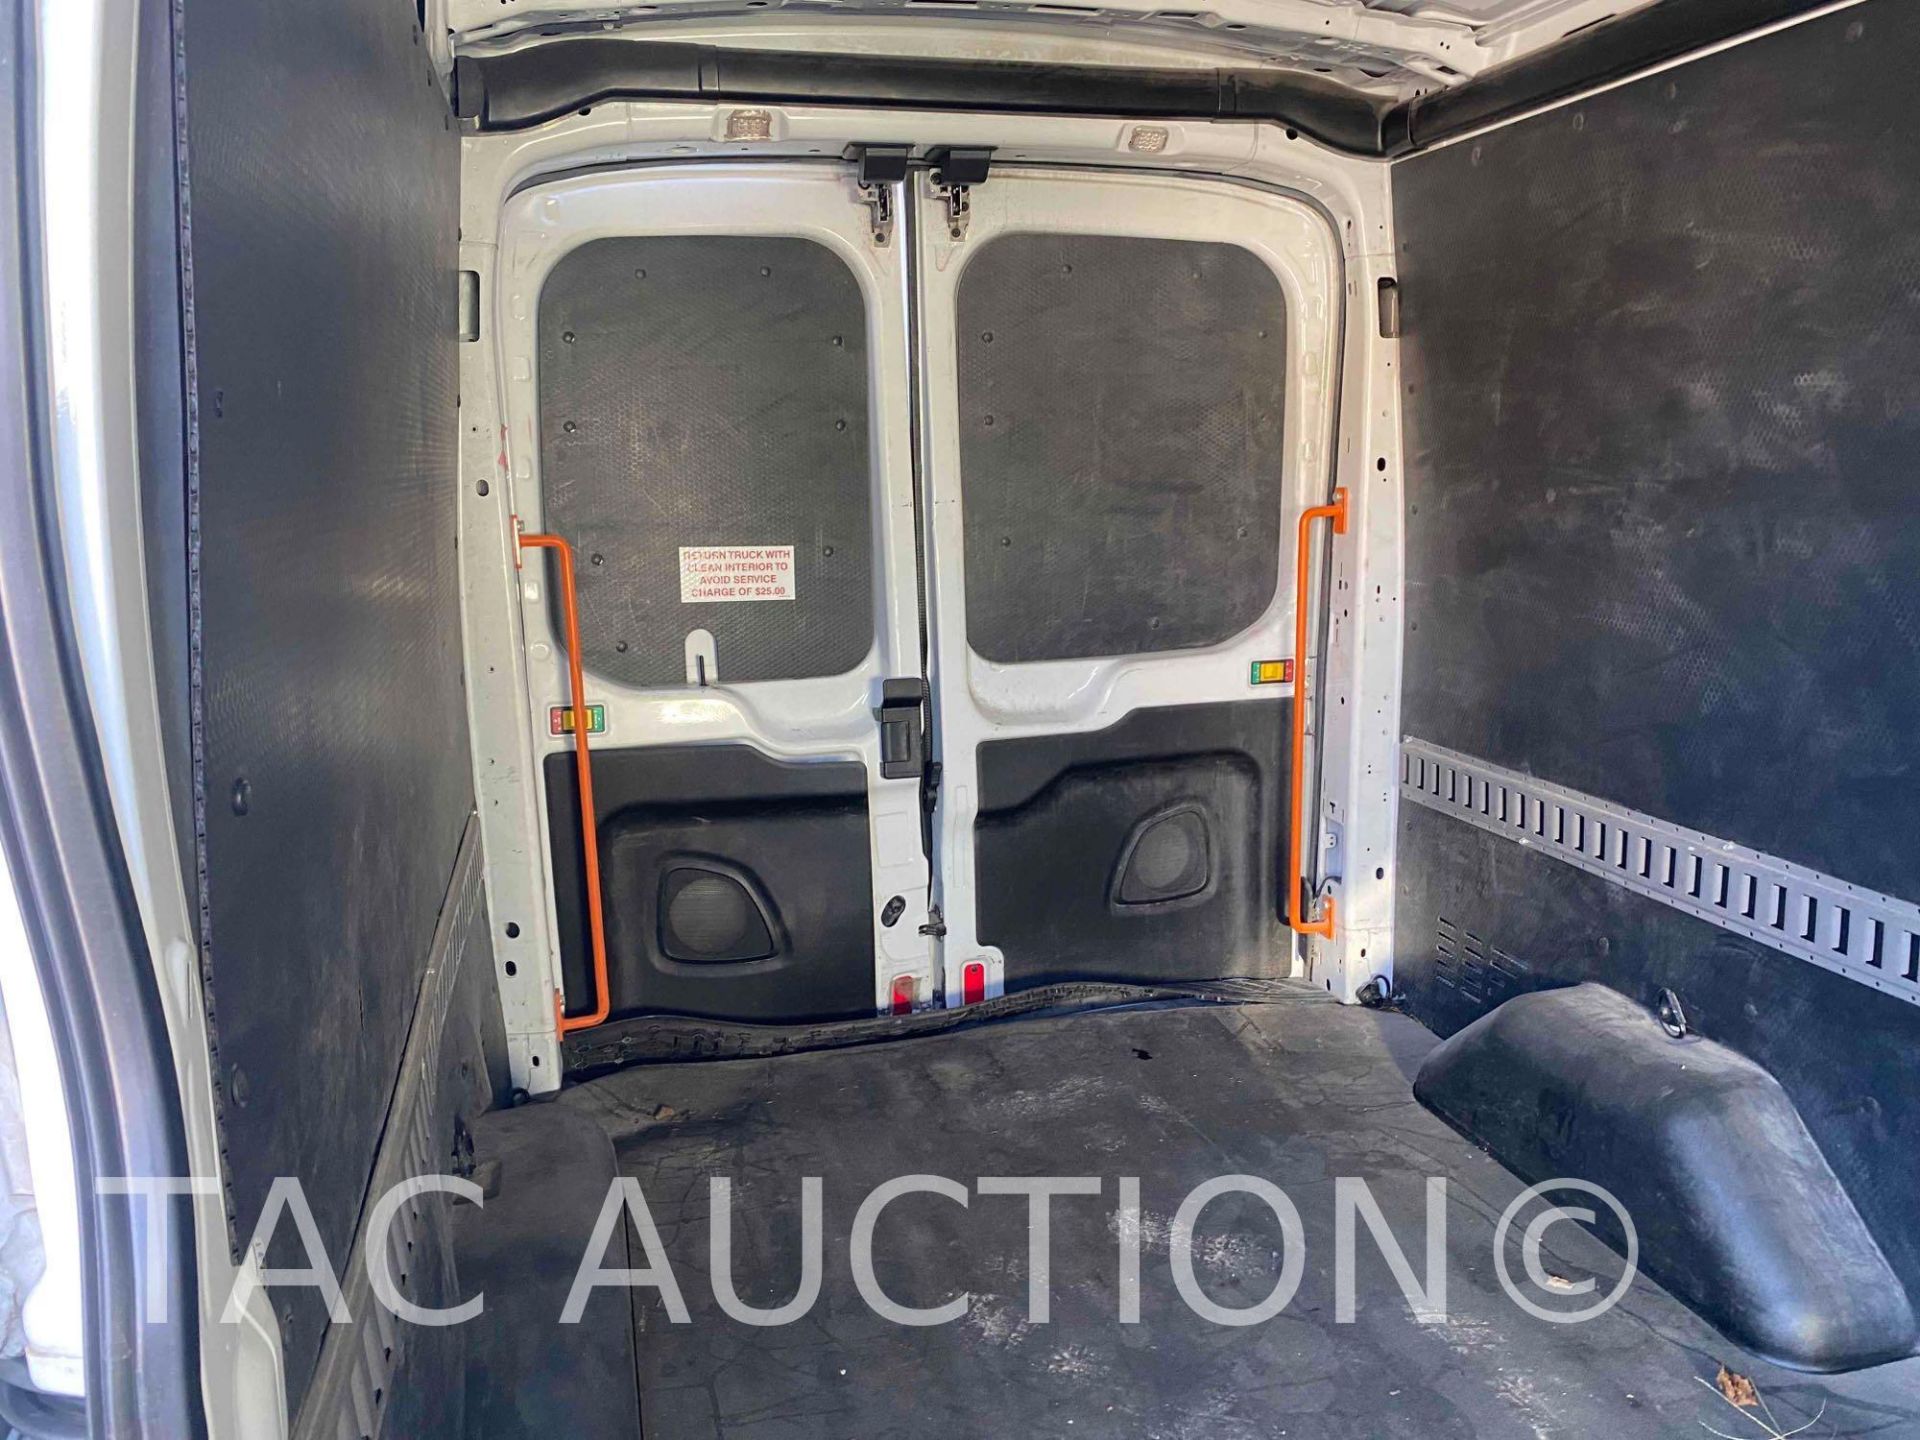 2019 Ford Transit 150 Cargo Van - Image 8 of 38